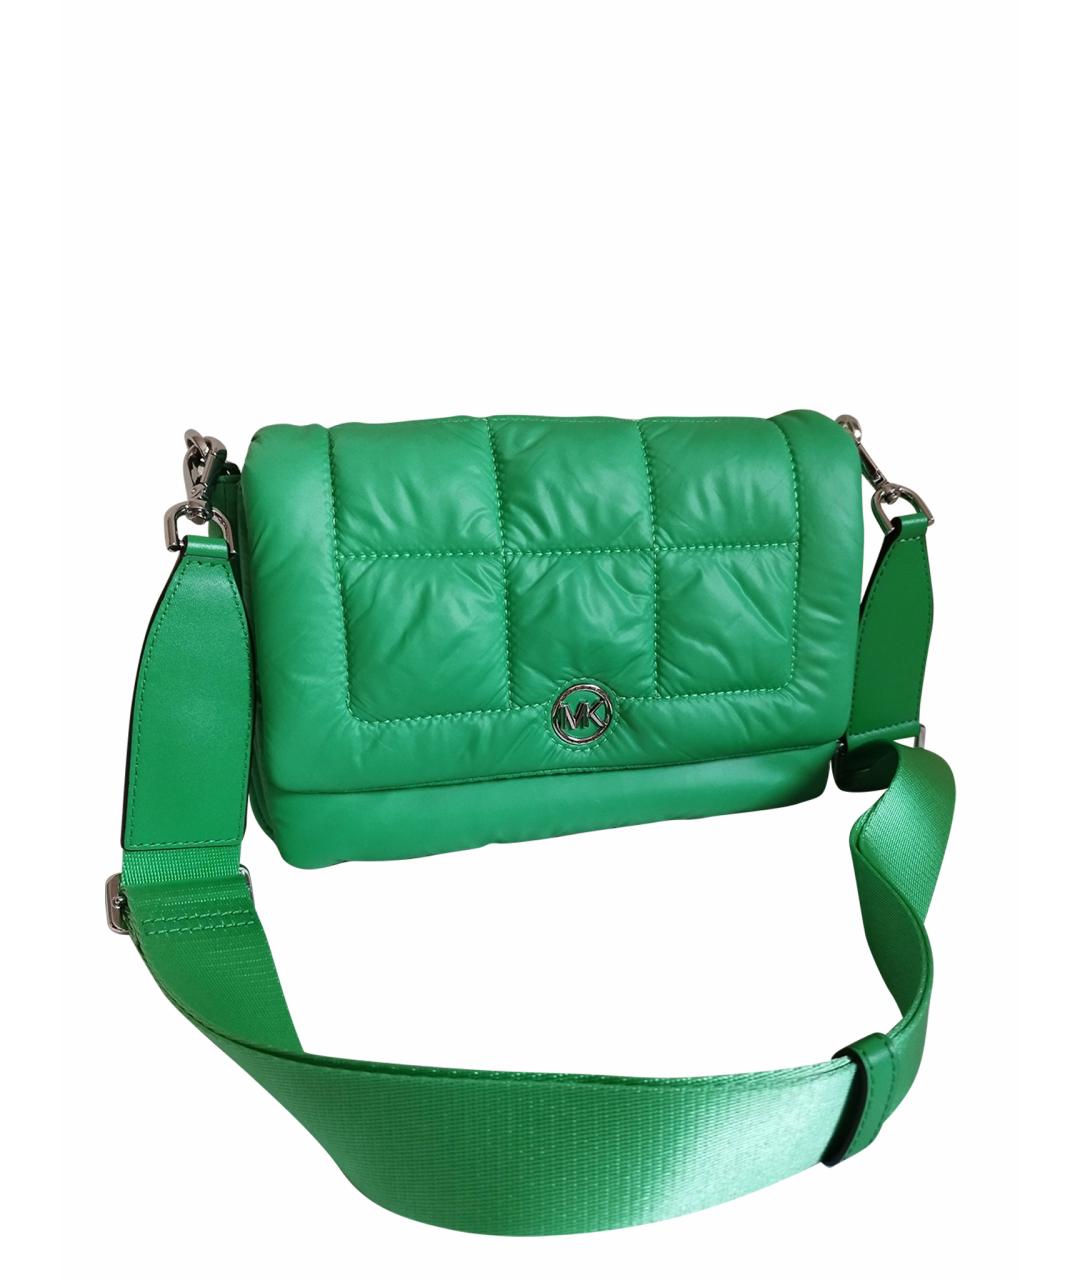 MICHAEL KORS Зеленая сумка через плечо, фото 1